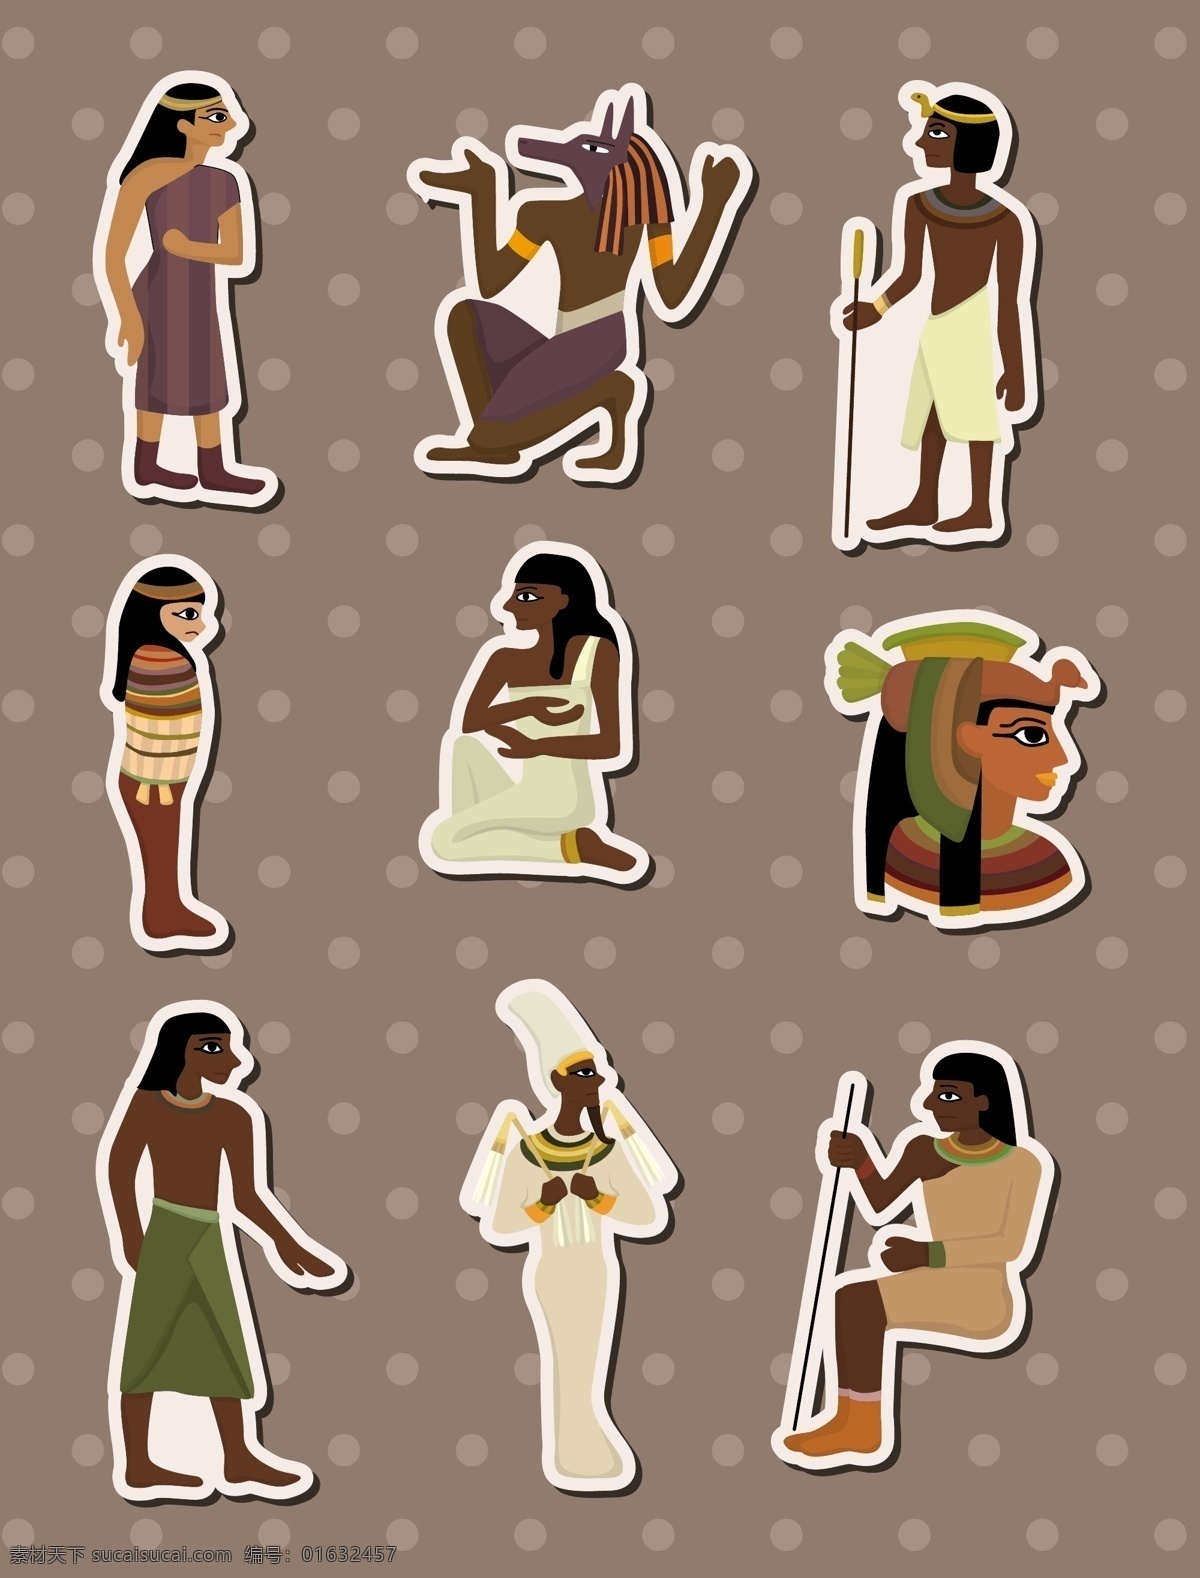 埃及图形 埃及 图文 适量 埃及图文 金字塔 平面 文化艺术 传统文化